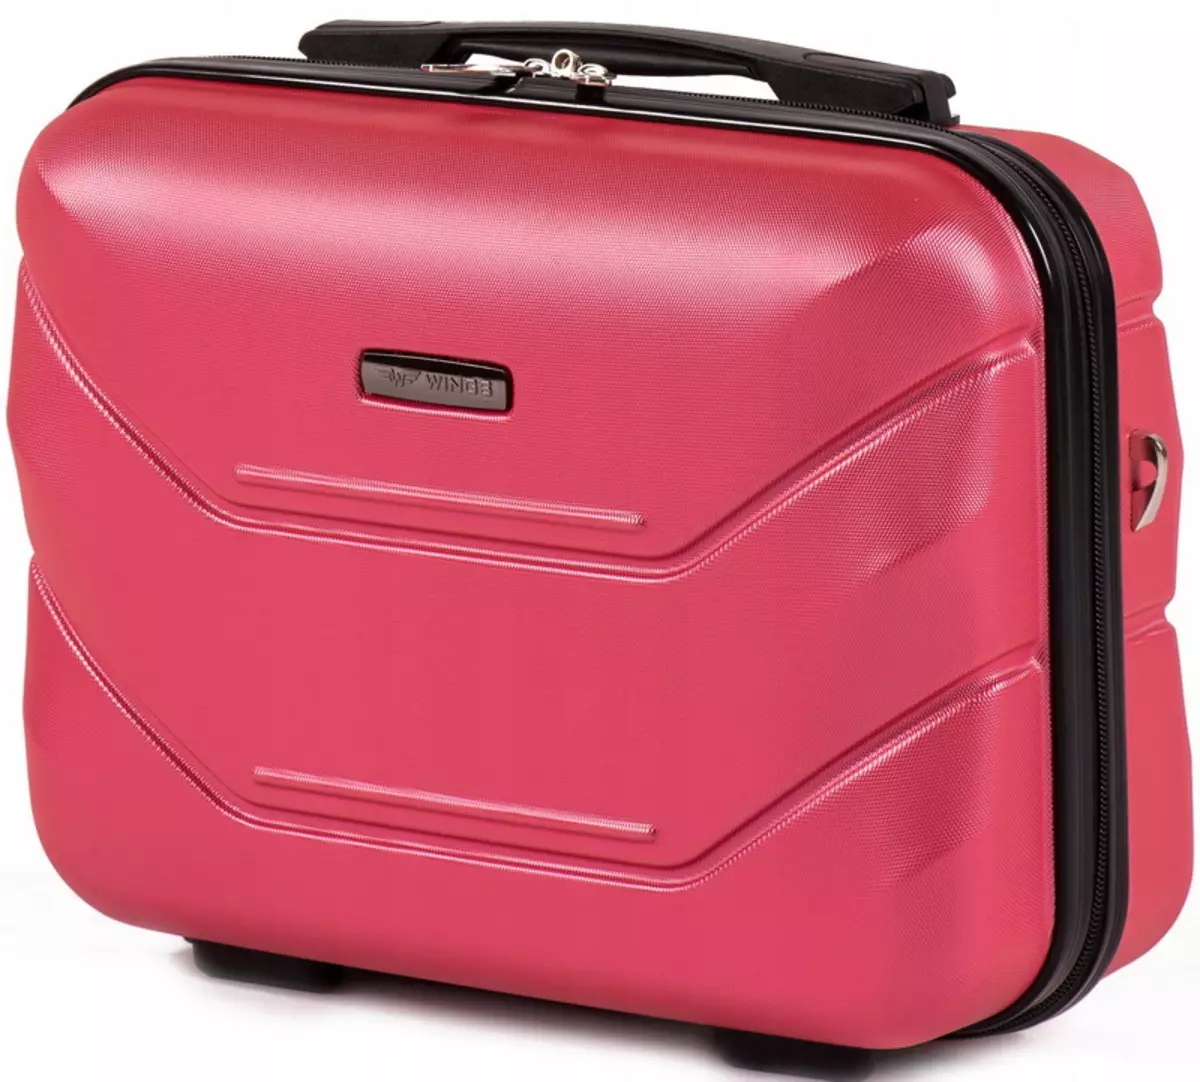 Kosmetika Pouzdra (60 fotografií): kufry na kolečkách, taškách a jiných kosmetických stylu krásy. Volba profesionálních kosmetických případů 4364_27